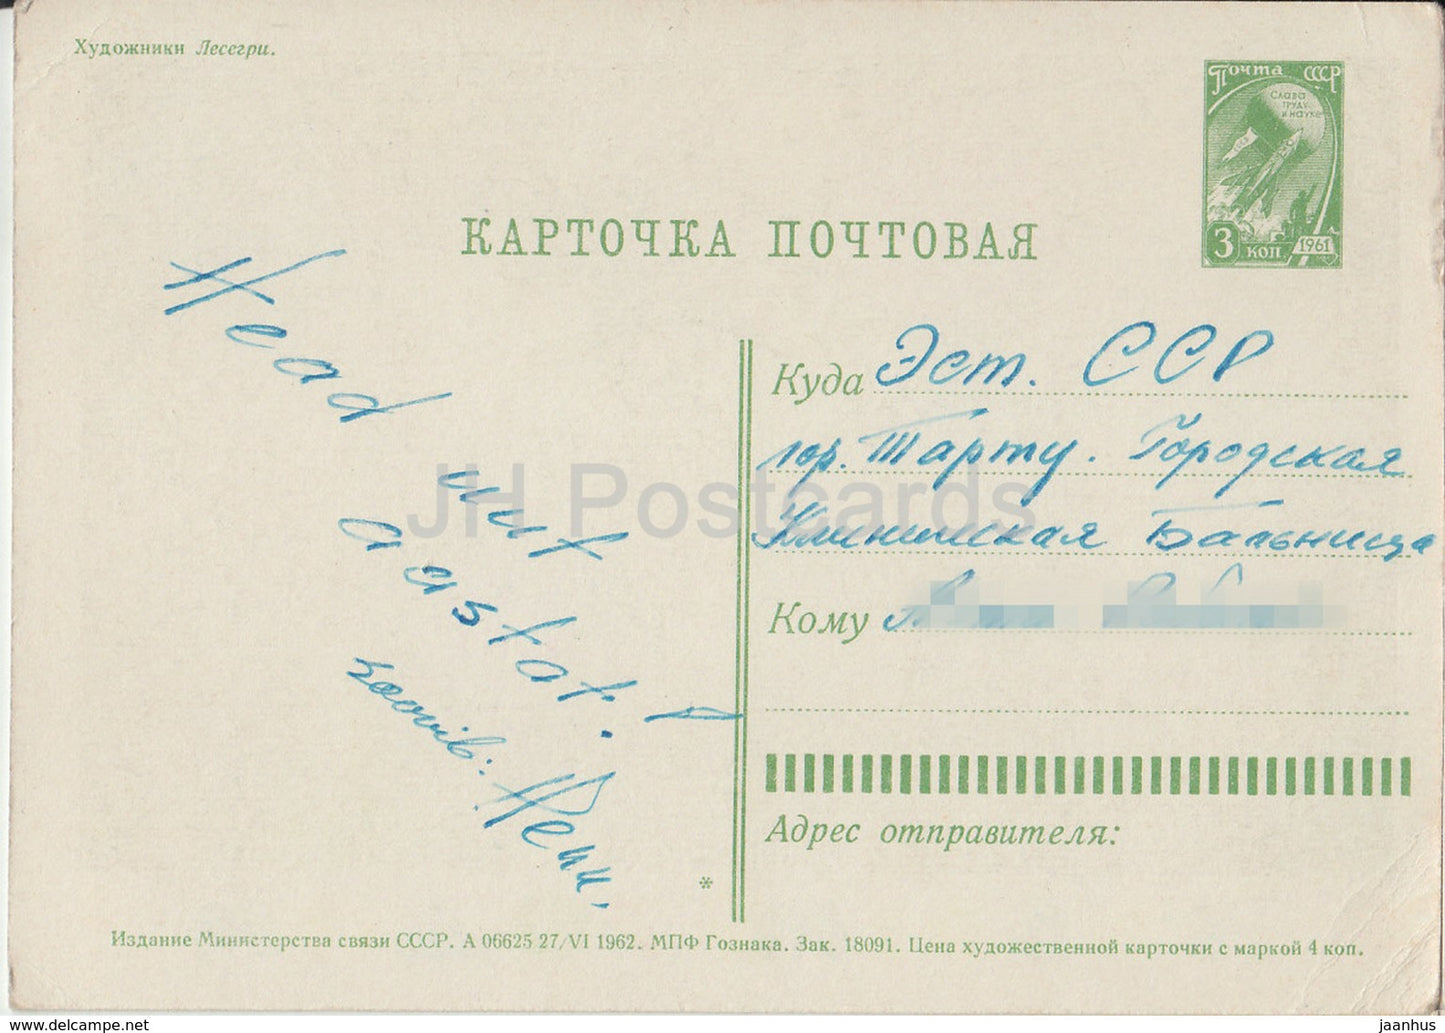 Carte de vœux du Nouvel An par Lesegri - Sapin - entier postal - 1962 - Russie URSS - utilisé